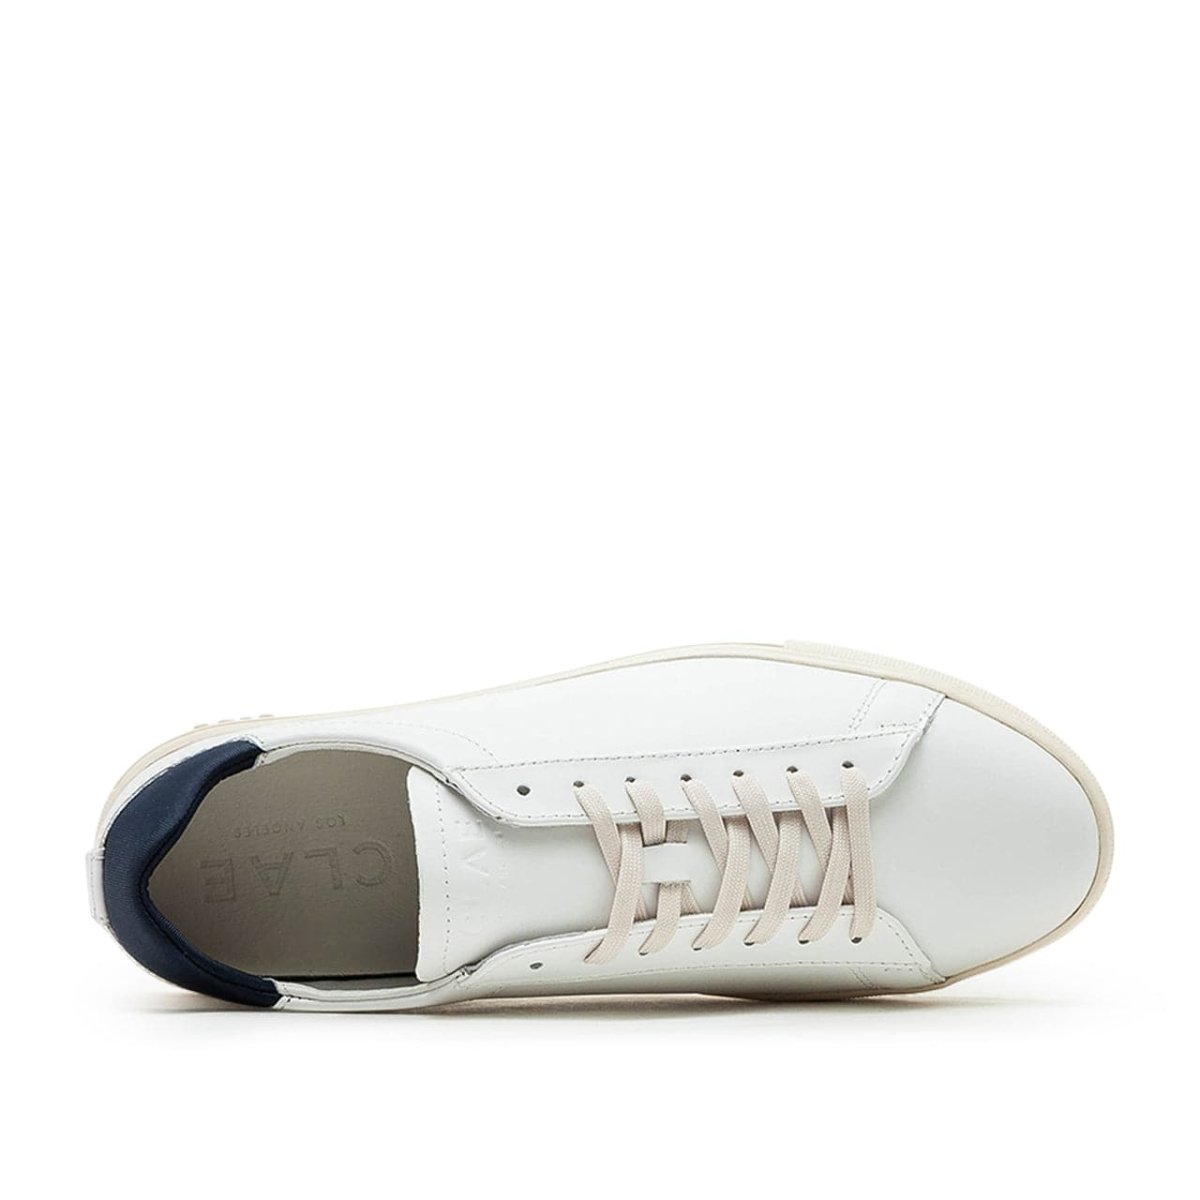 Clae Bradley Essentials White Leather (Weiss / Navy)  - Allike Store